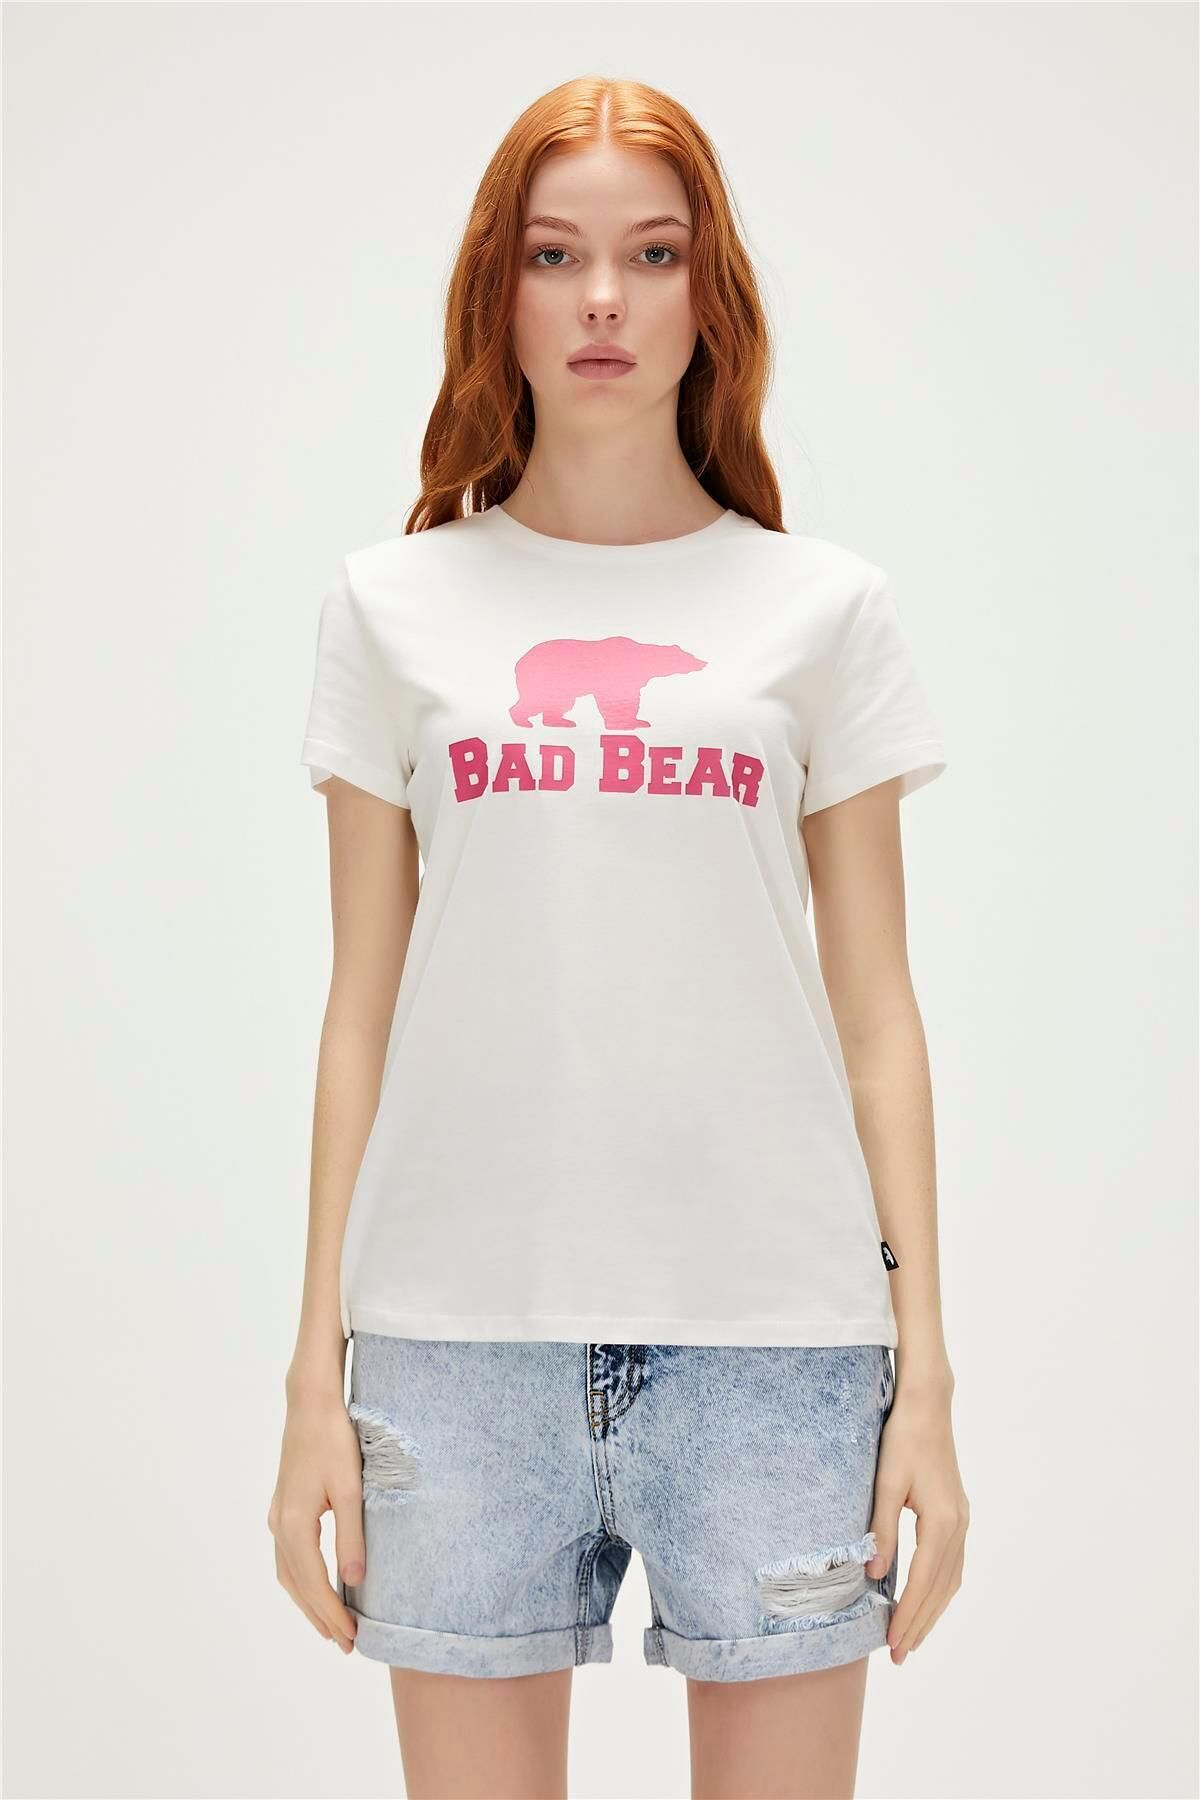 Bad Bear Logo Tee T-shirt Off-white Beyaz/fuşya Baskılı Kadın Tişört